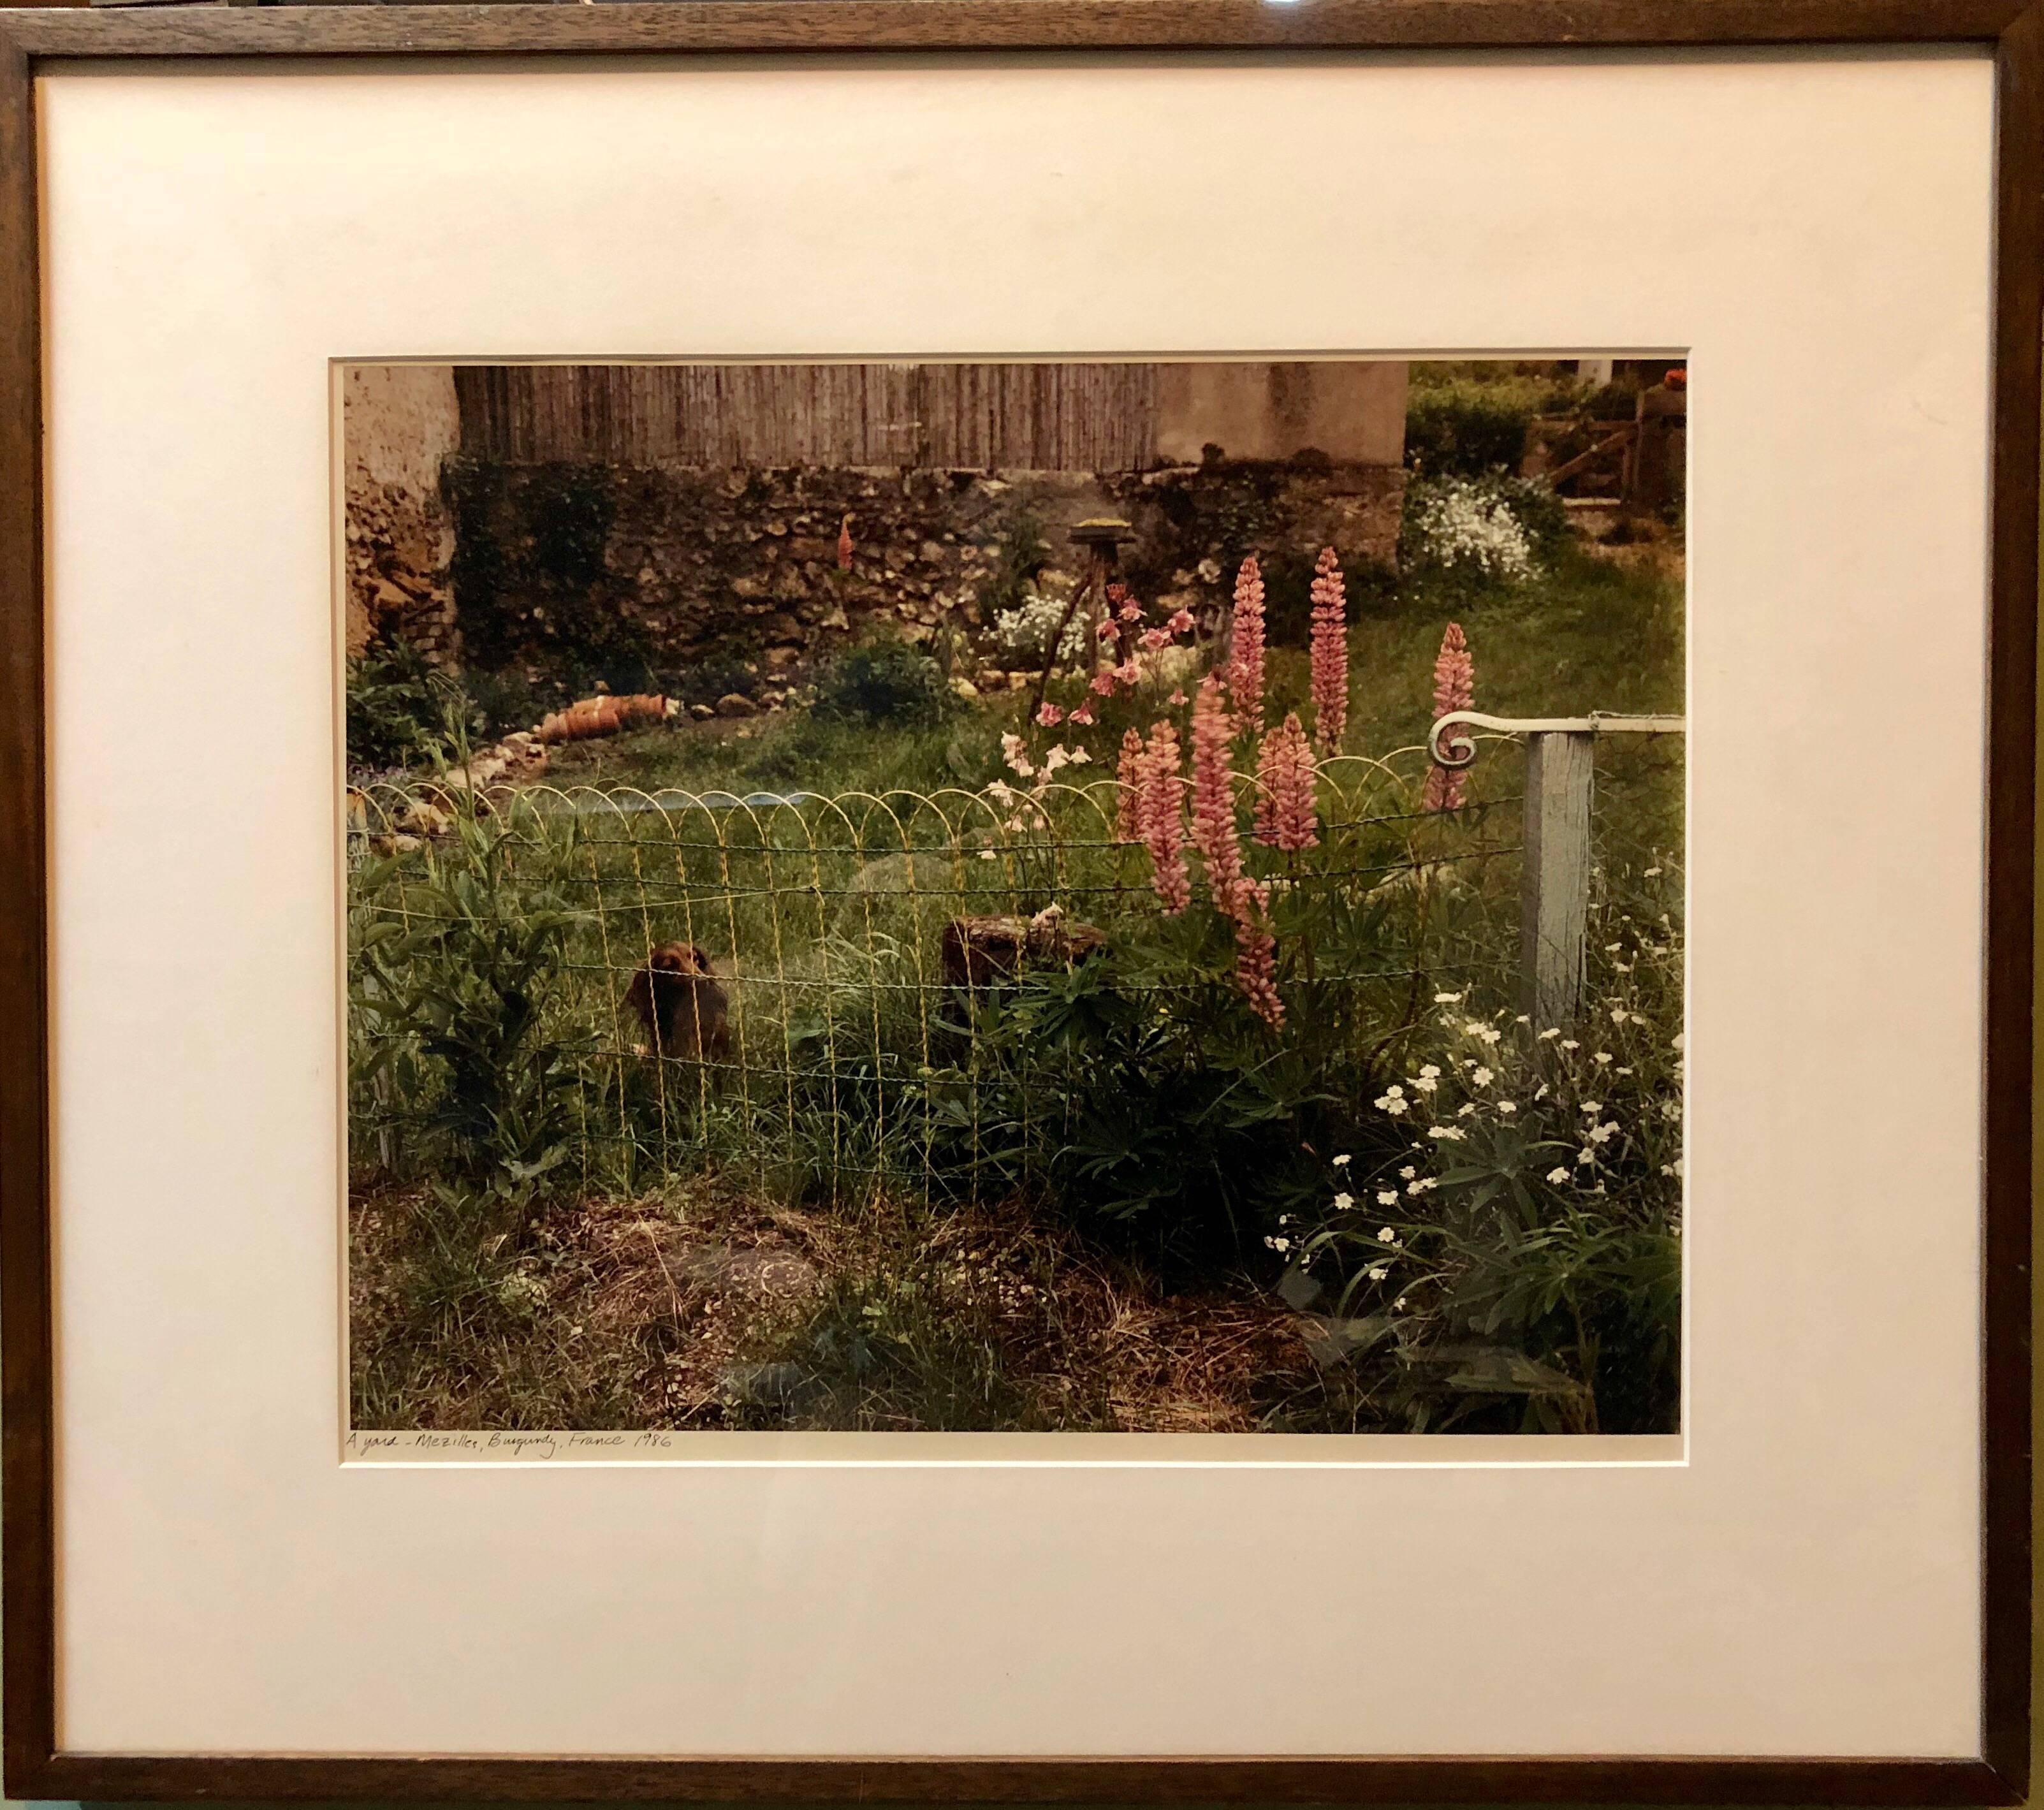 A Yard, Mezilles, Bourgogne, France. Photographie couleur vintage « Field Of Flowers », 1986 - Marron Landscape Photograph par Frank Gohlke